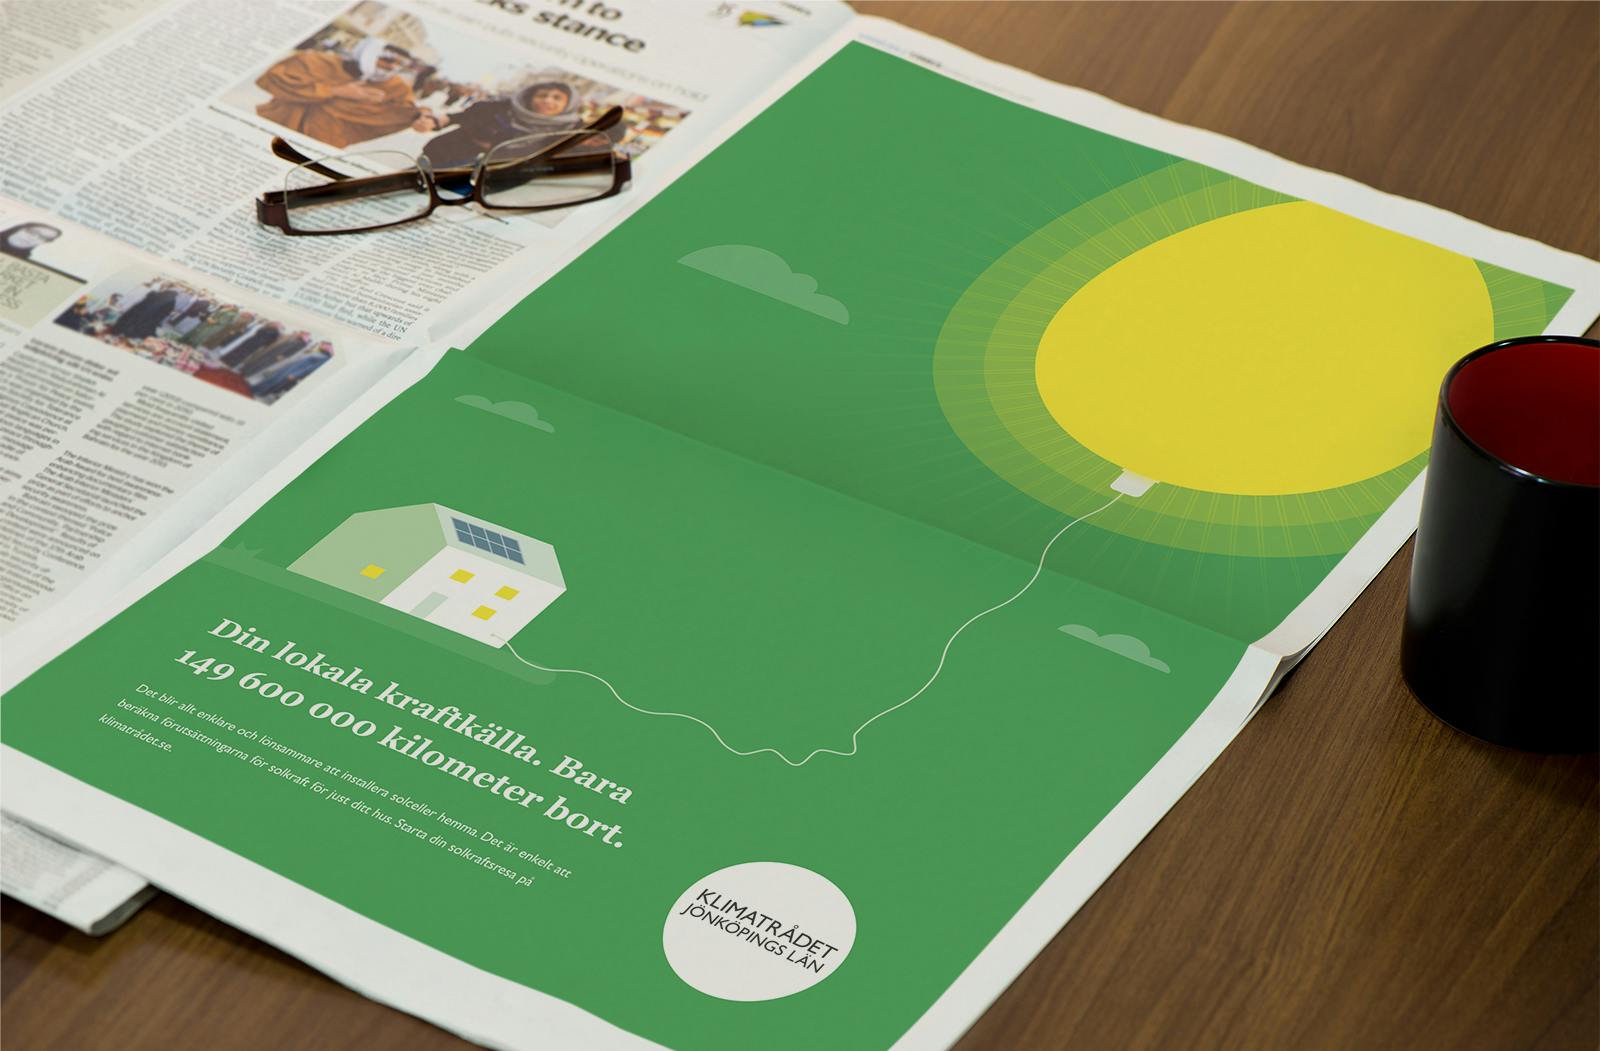 Klimatrådets kampanj i annons i tidning gjord av Consid